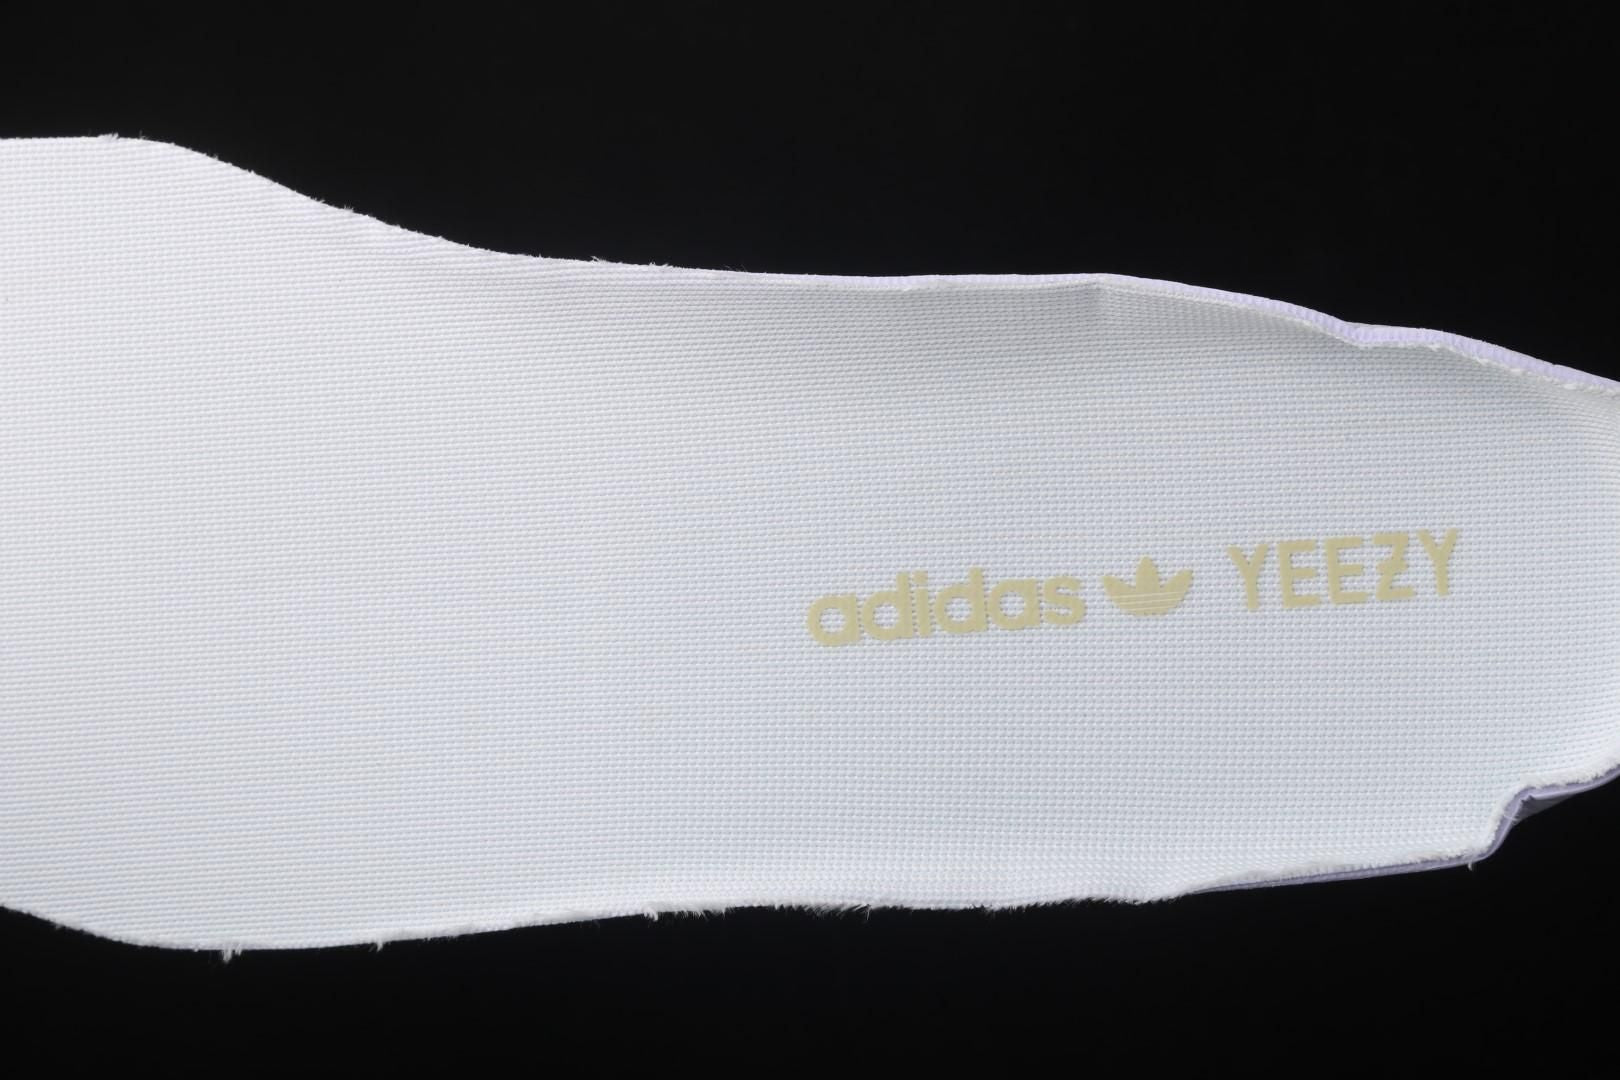 adidasMens Yeezy Boost 350 V2 - Yeshaya (Reflective)